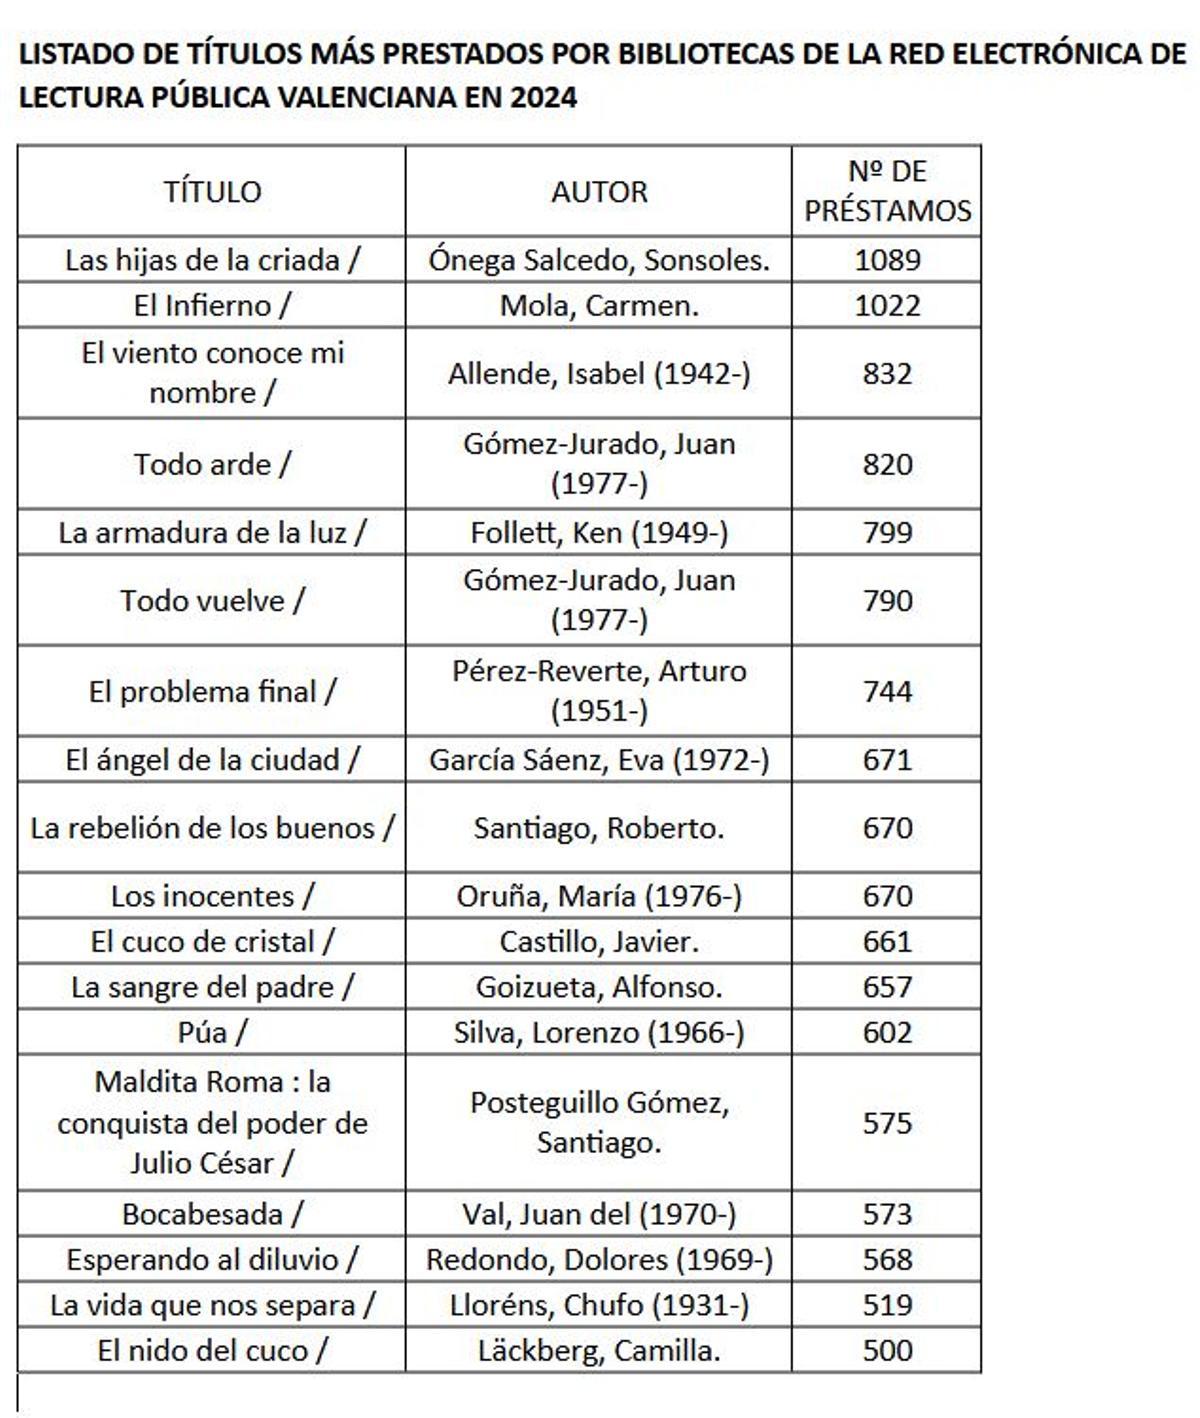 Los libros más prestados en las bibliotecas valencianas en lo que va de 2024.